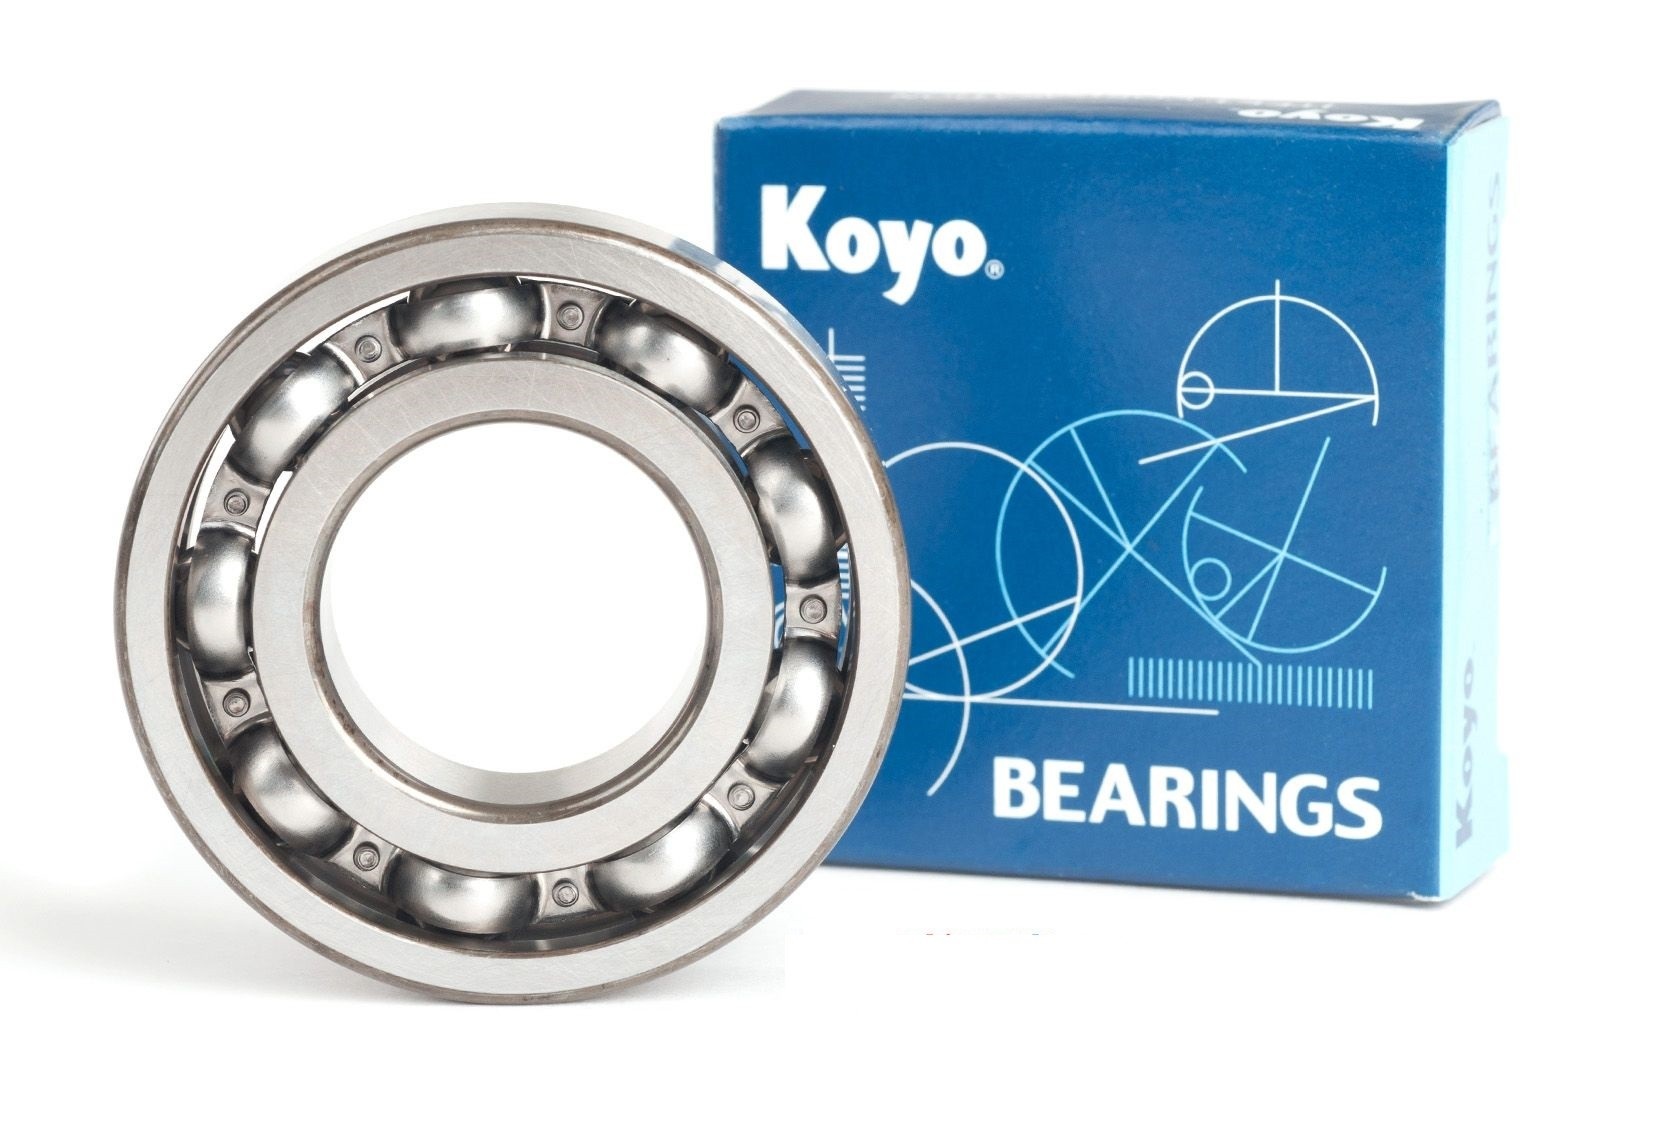 Koyo Japan Bearings